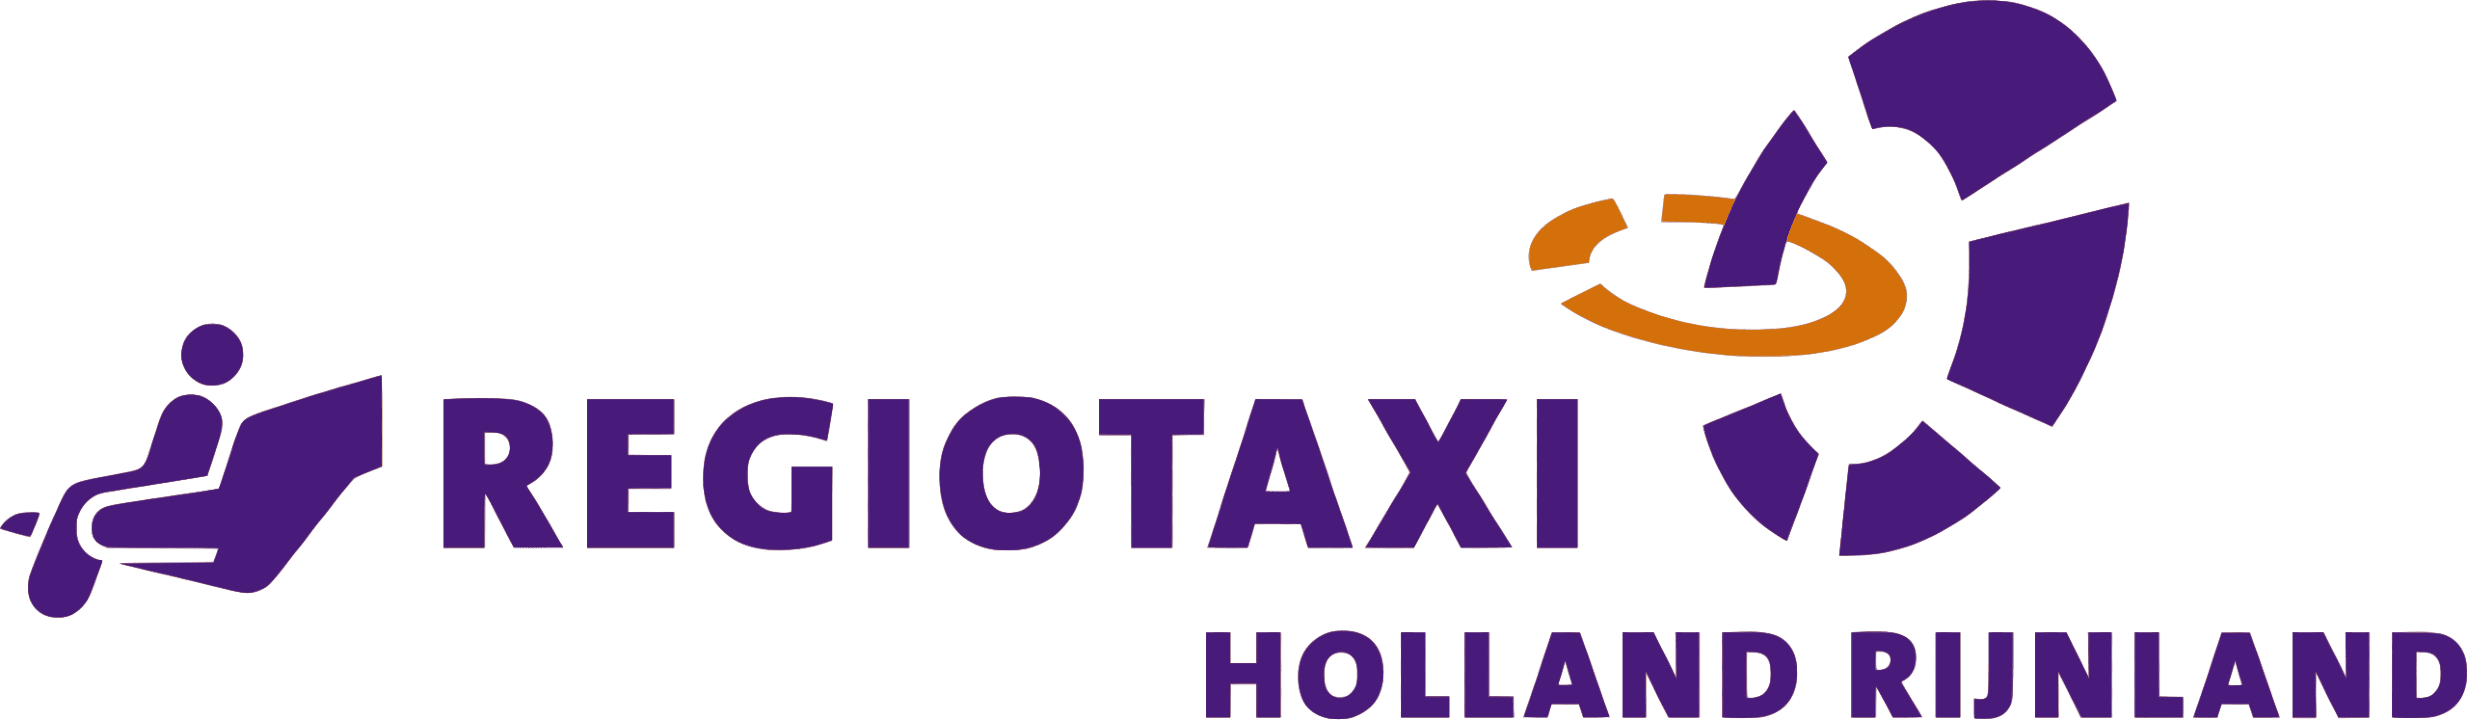 Logo Regiotaxi